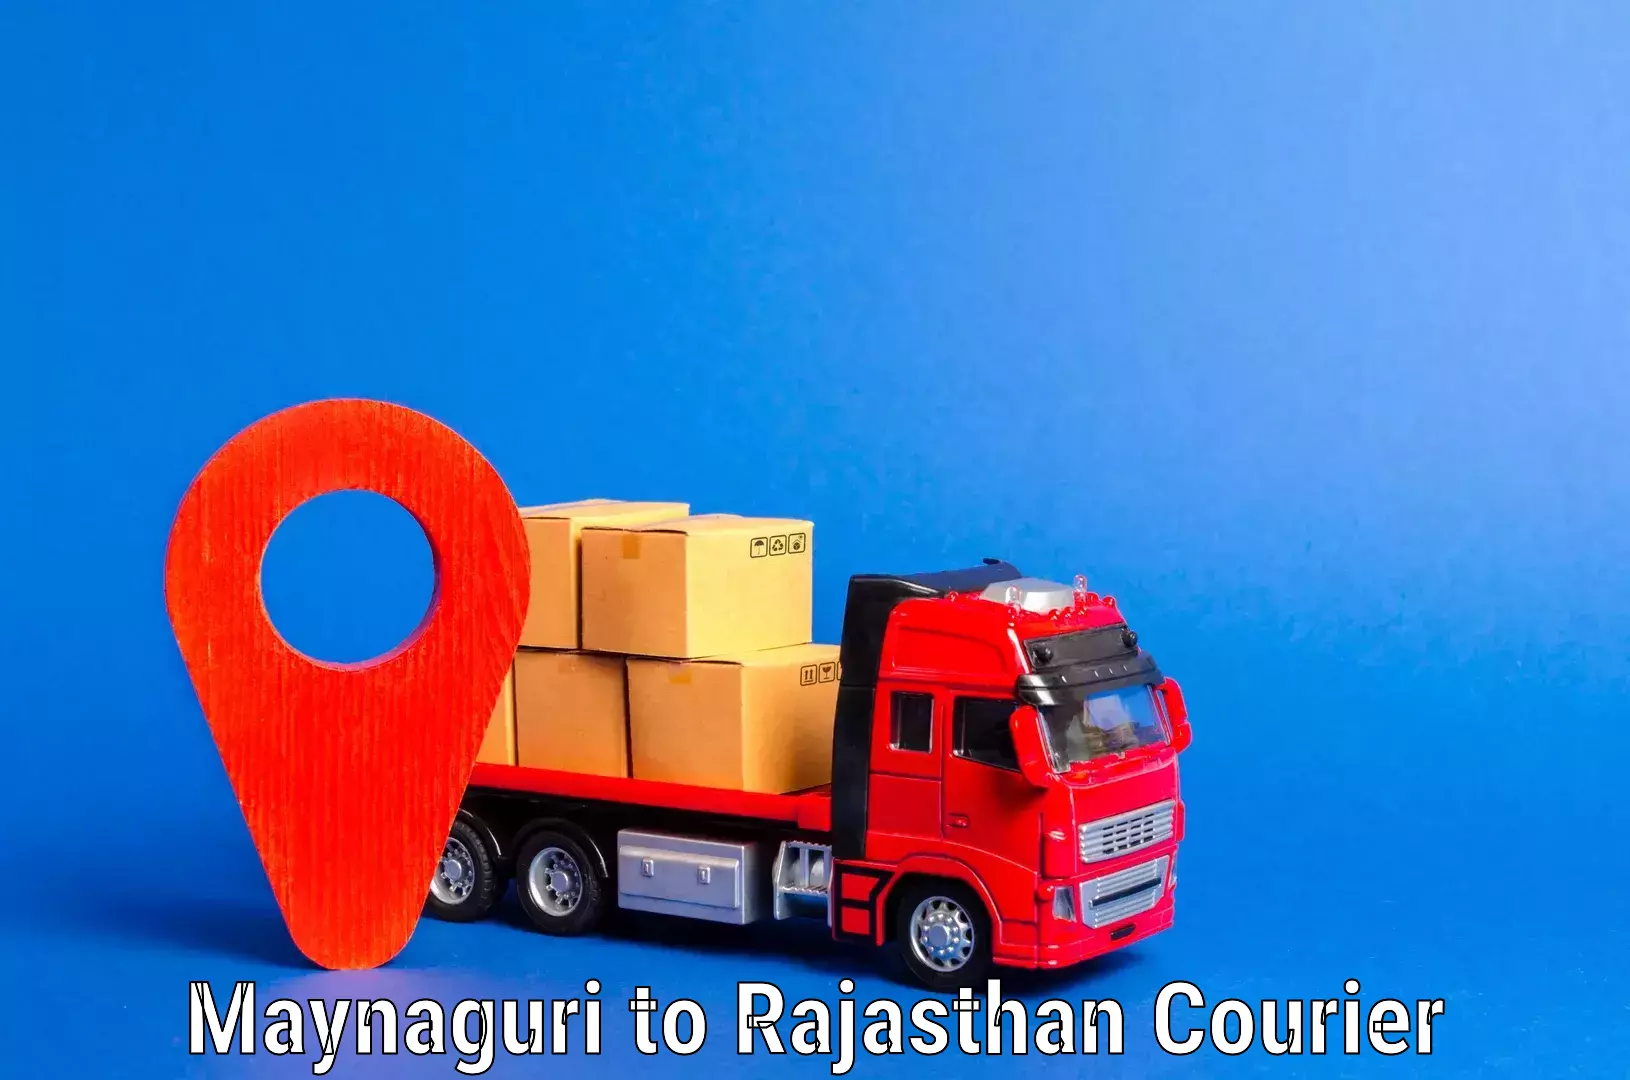 Expert furniture movers Maynaguri to Rajasthan